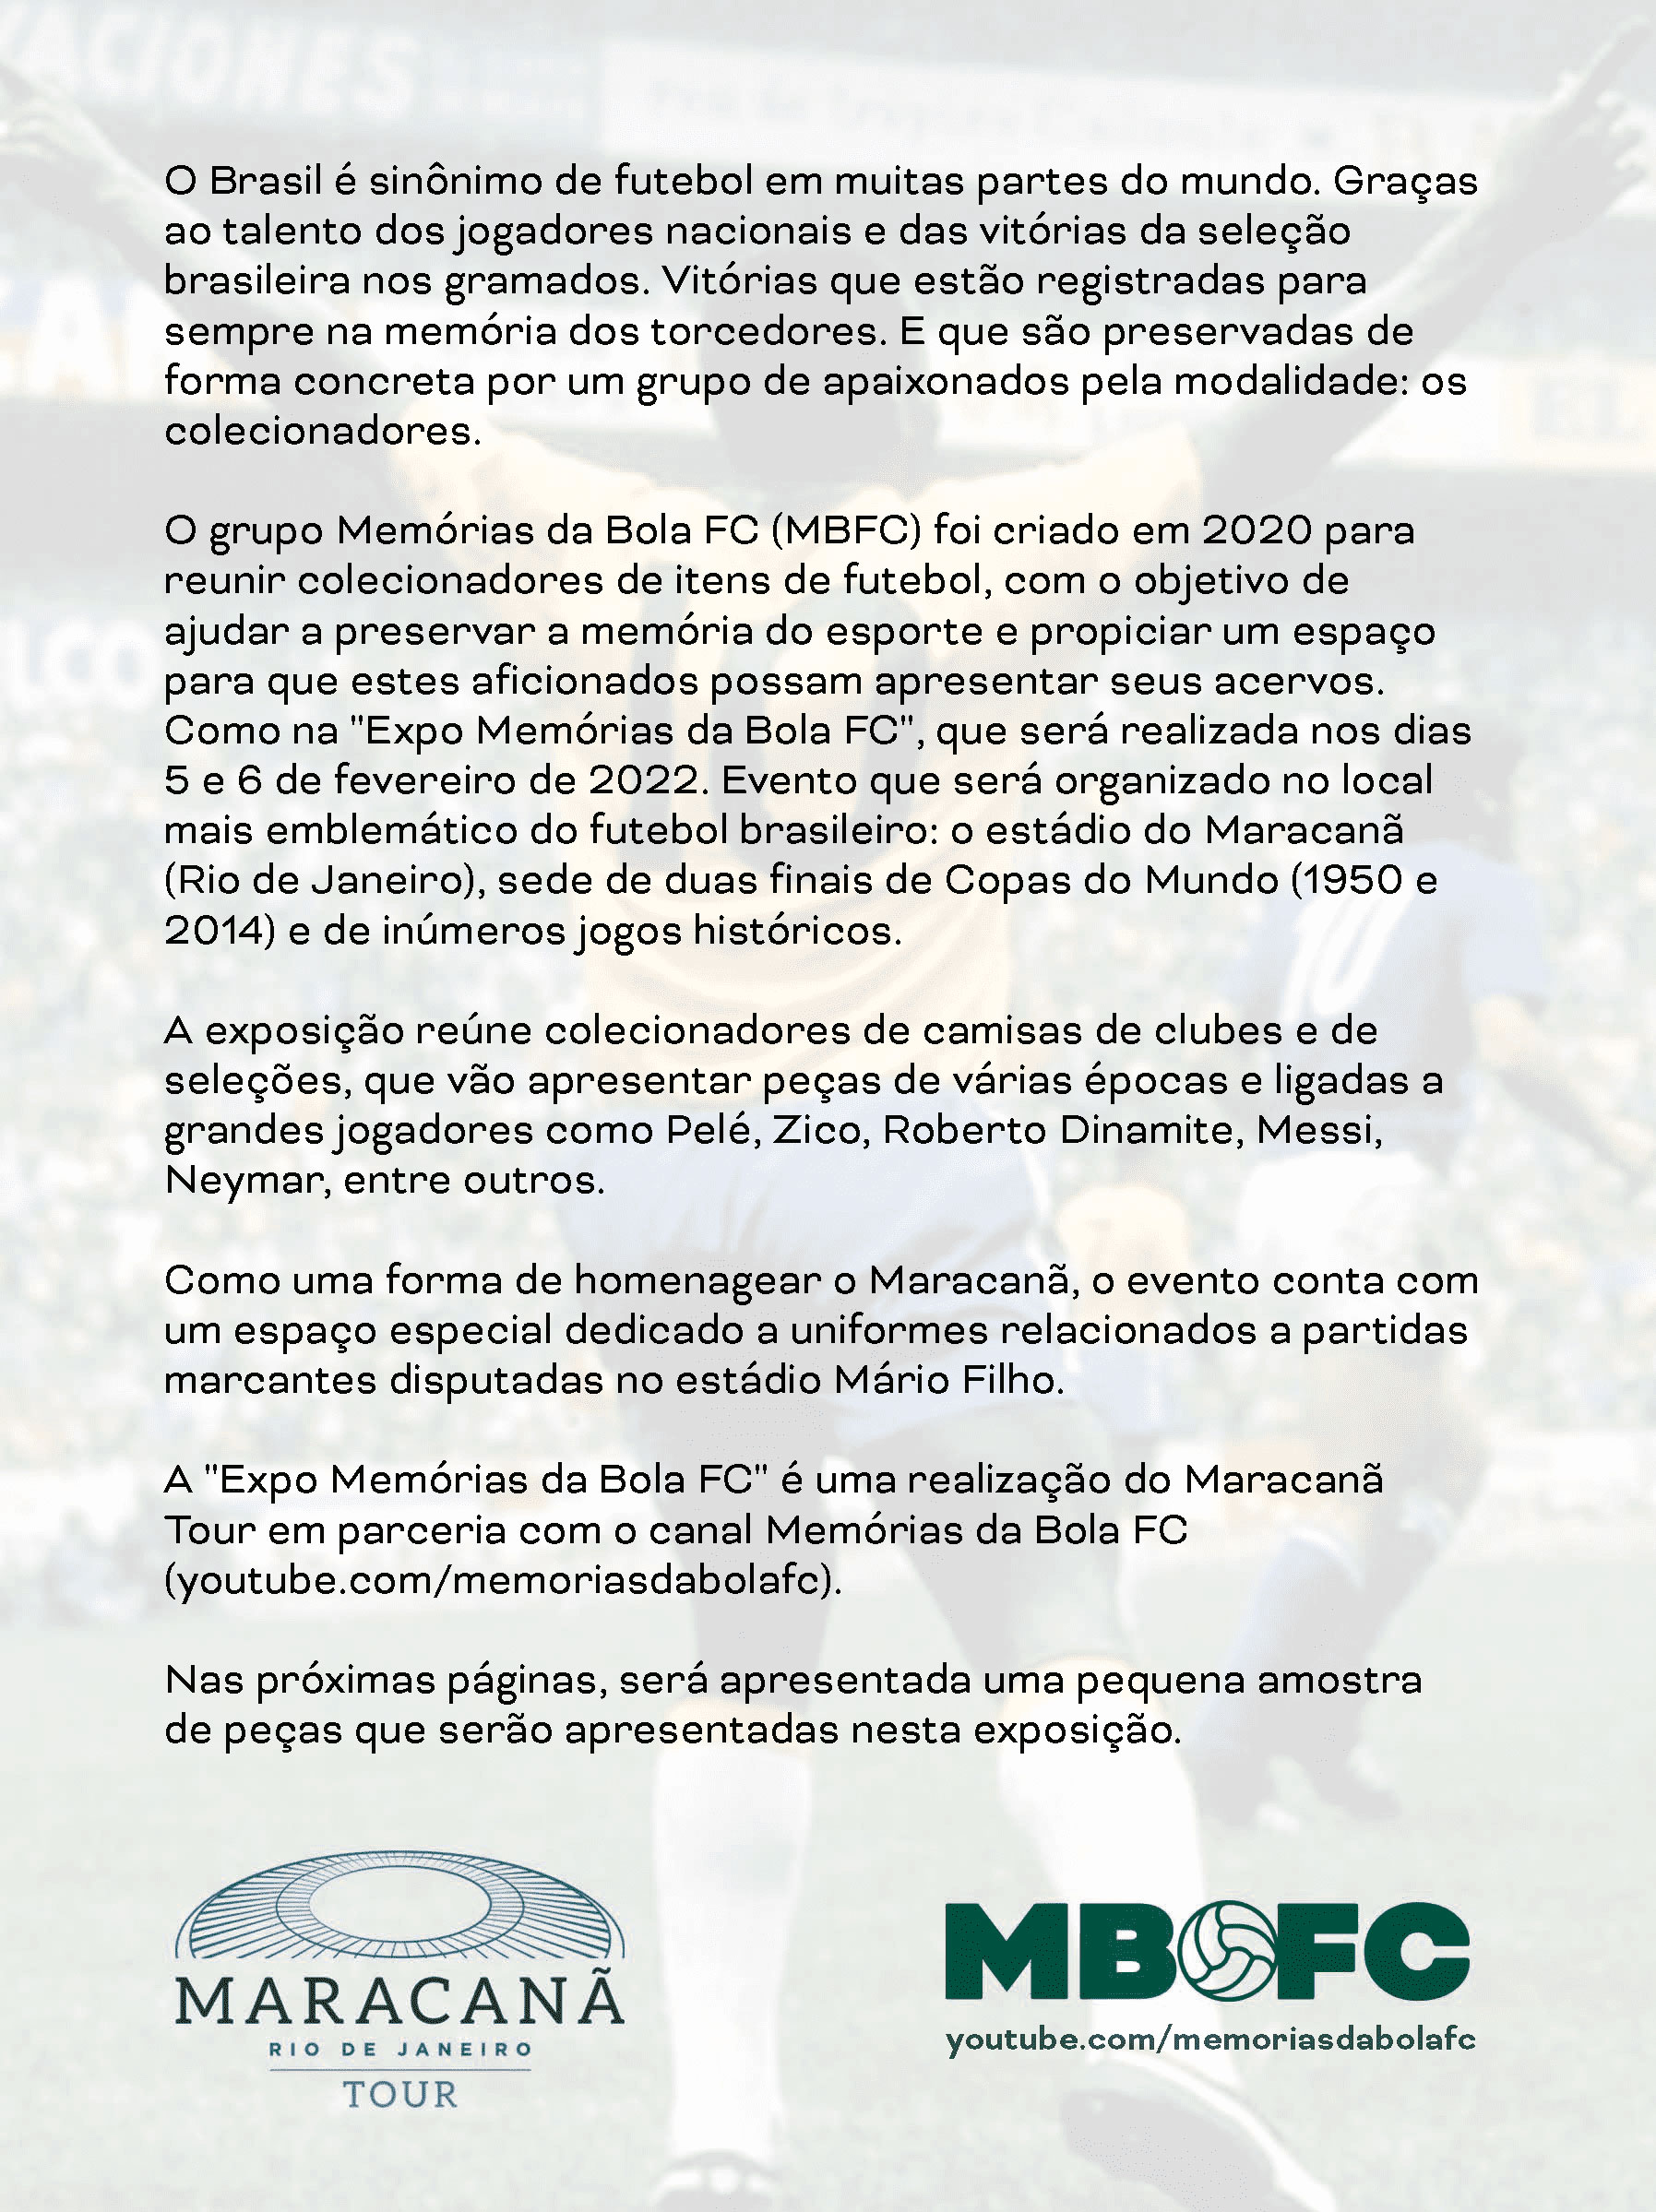 Expo Memórias da Bola FC